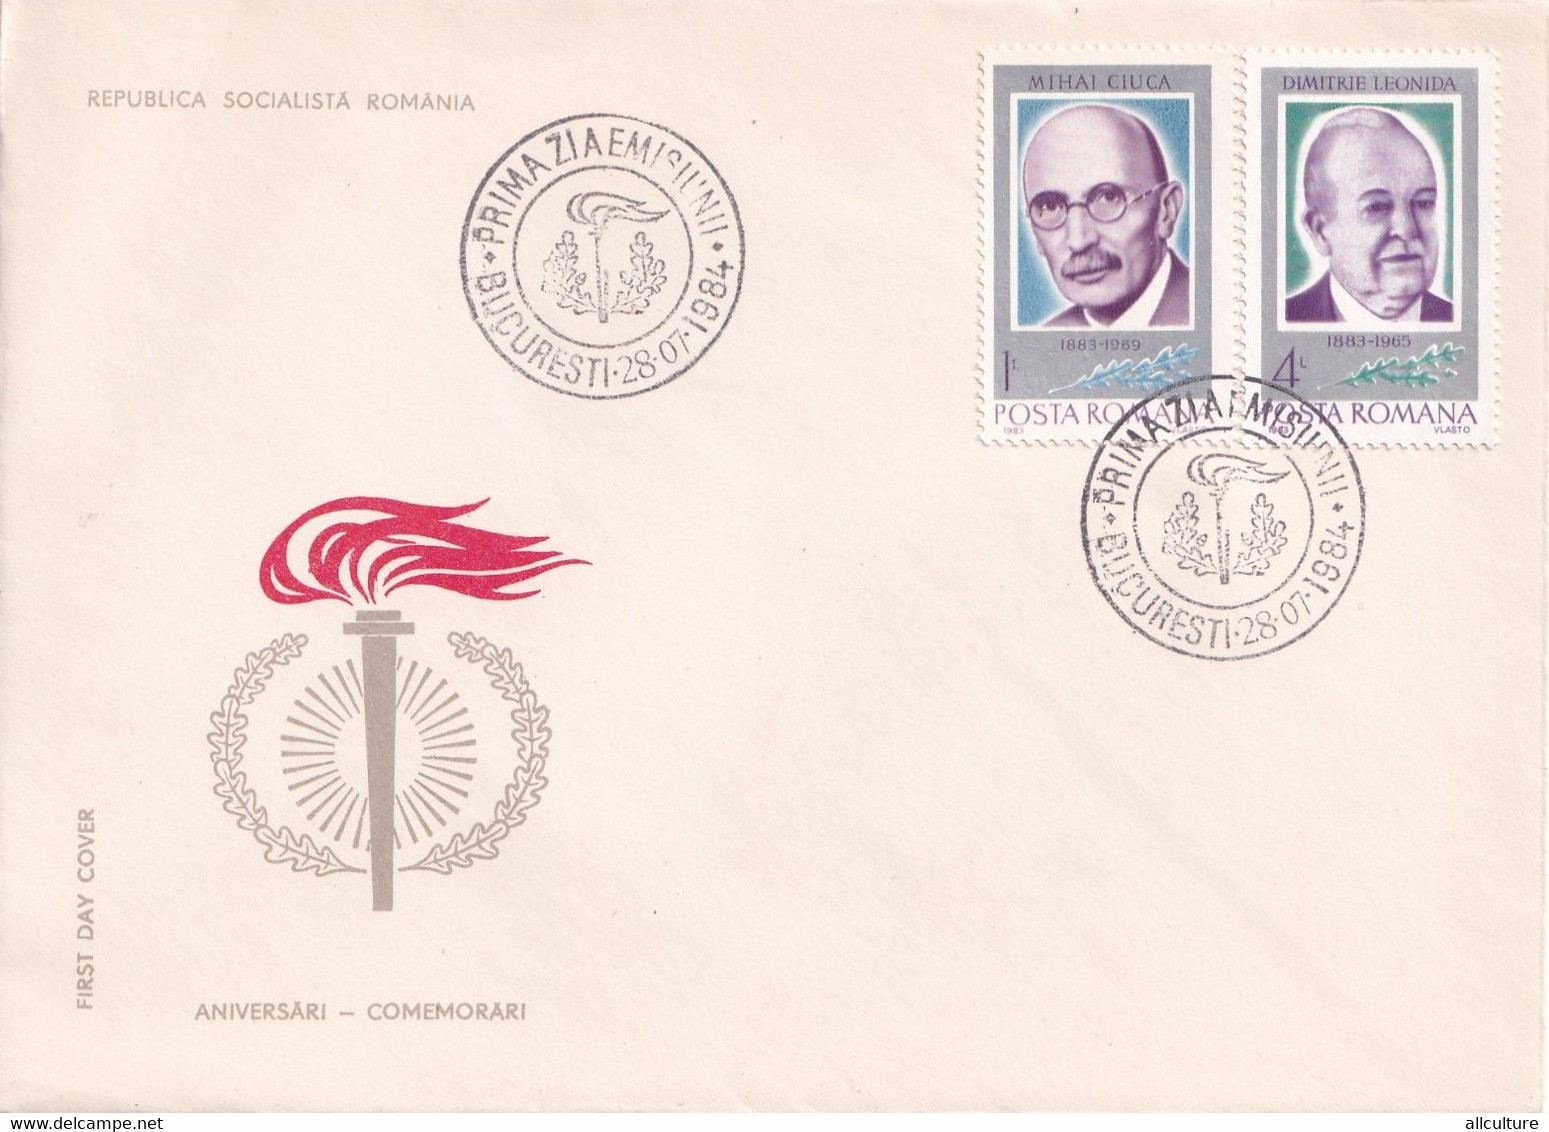 A2650 - Aniversari-Comemorari Republica Socialista Romania, Bucuresti 28 Iulie 1984 4 Covers FDC - FDC